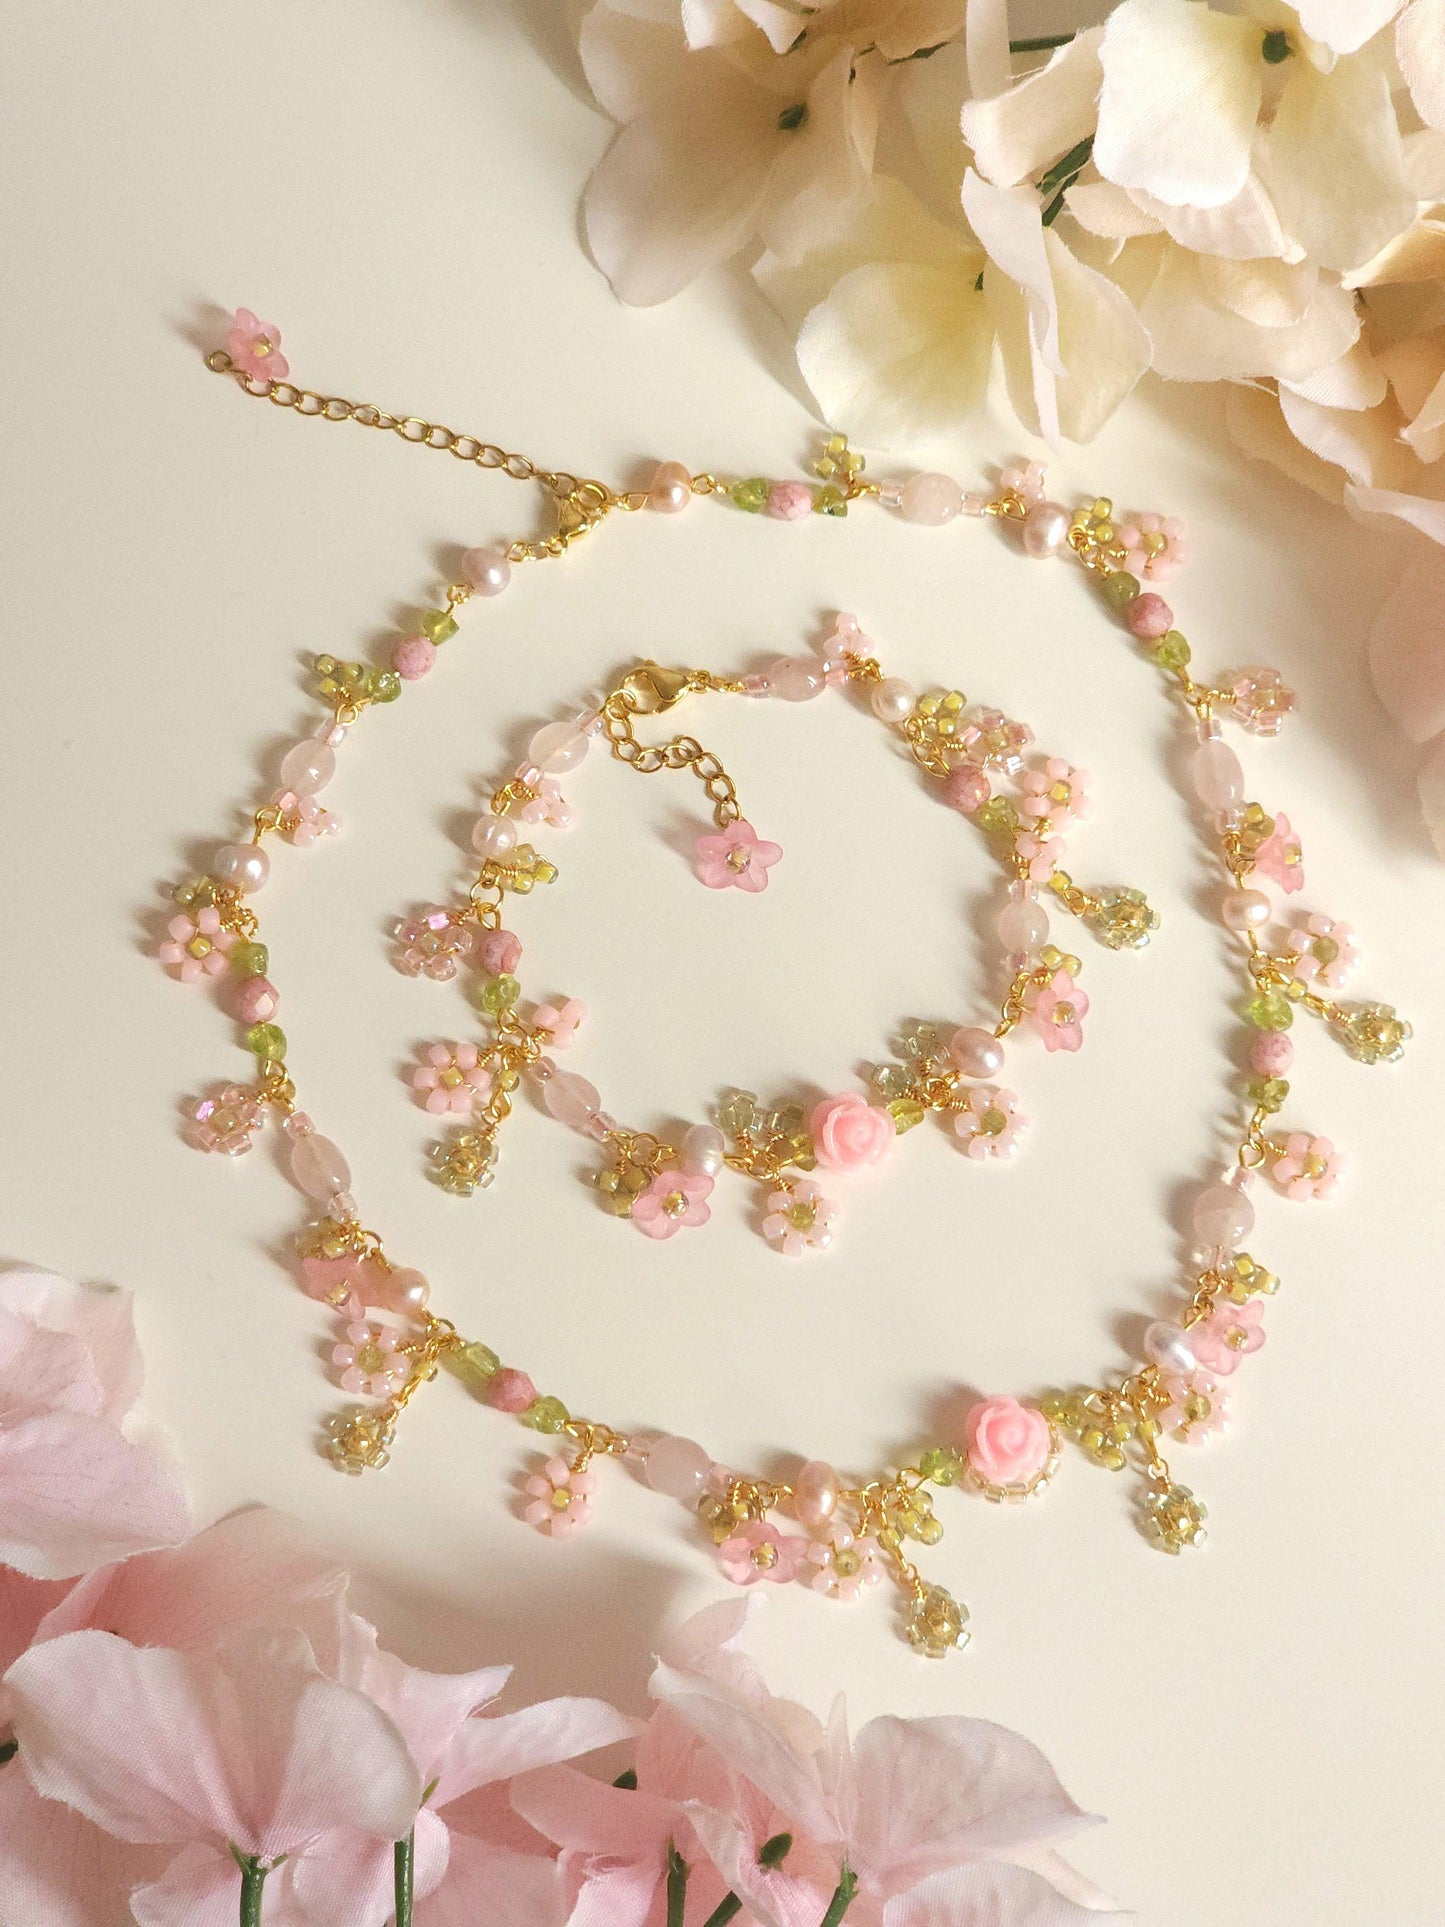 Vintage Rose Garden Bracelet - By Cocoyu